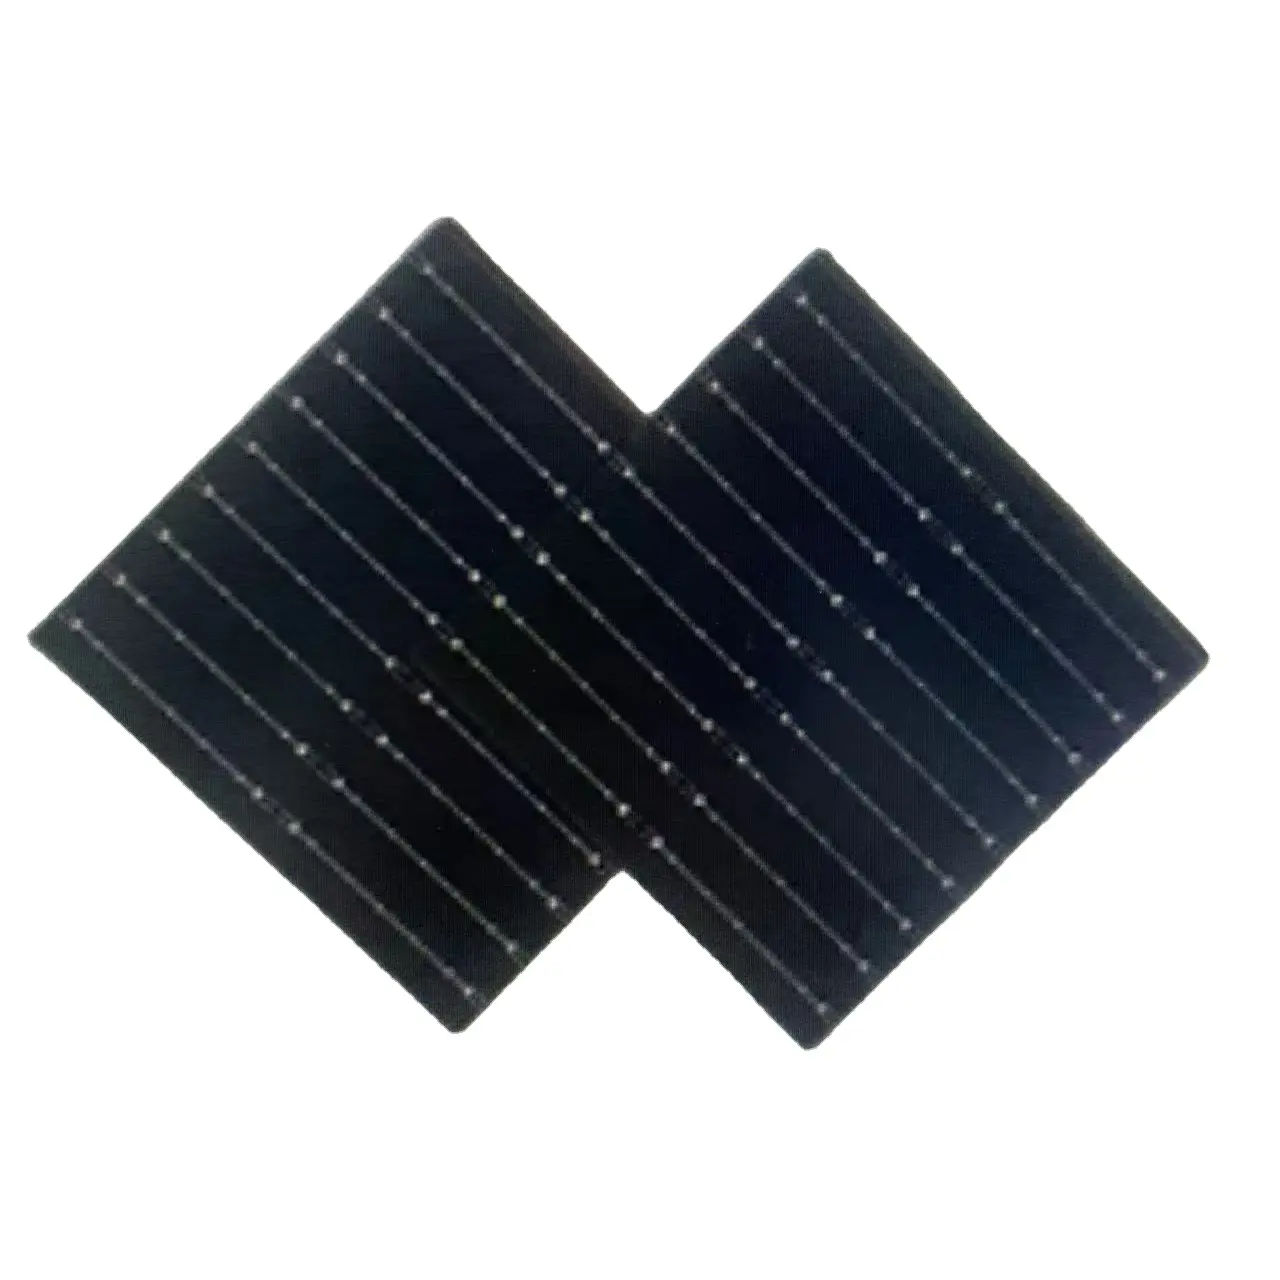 لوحة طاقة شمسية صغيرة الحجم من Intenergy لوحات طاقة شمسية مربعة الشكل بحجم مخصص